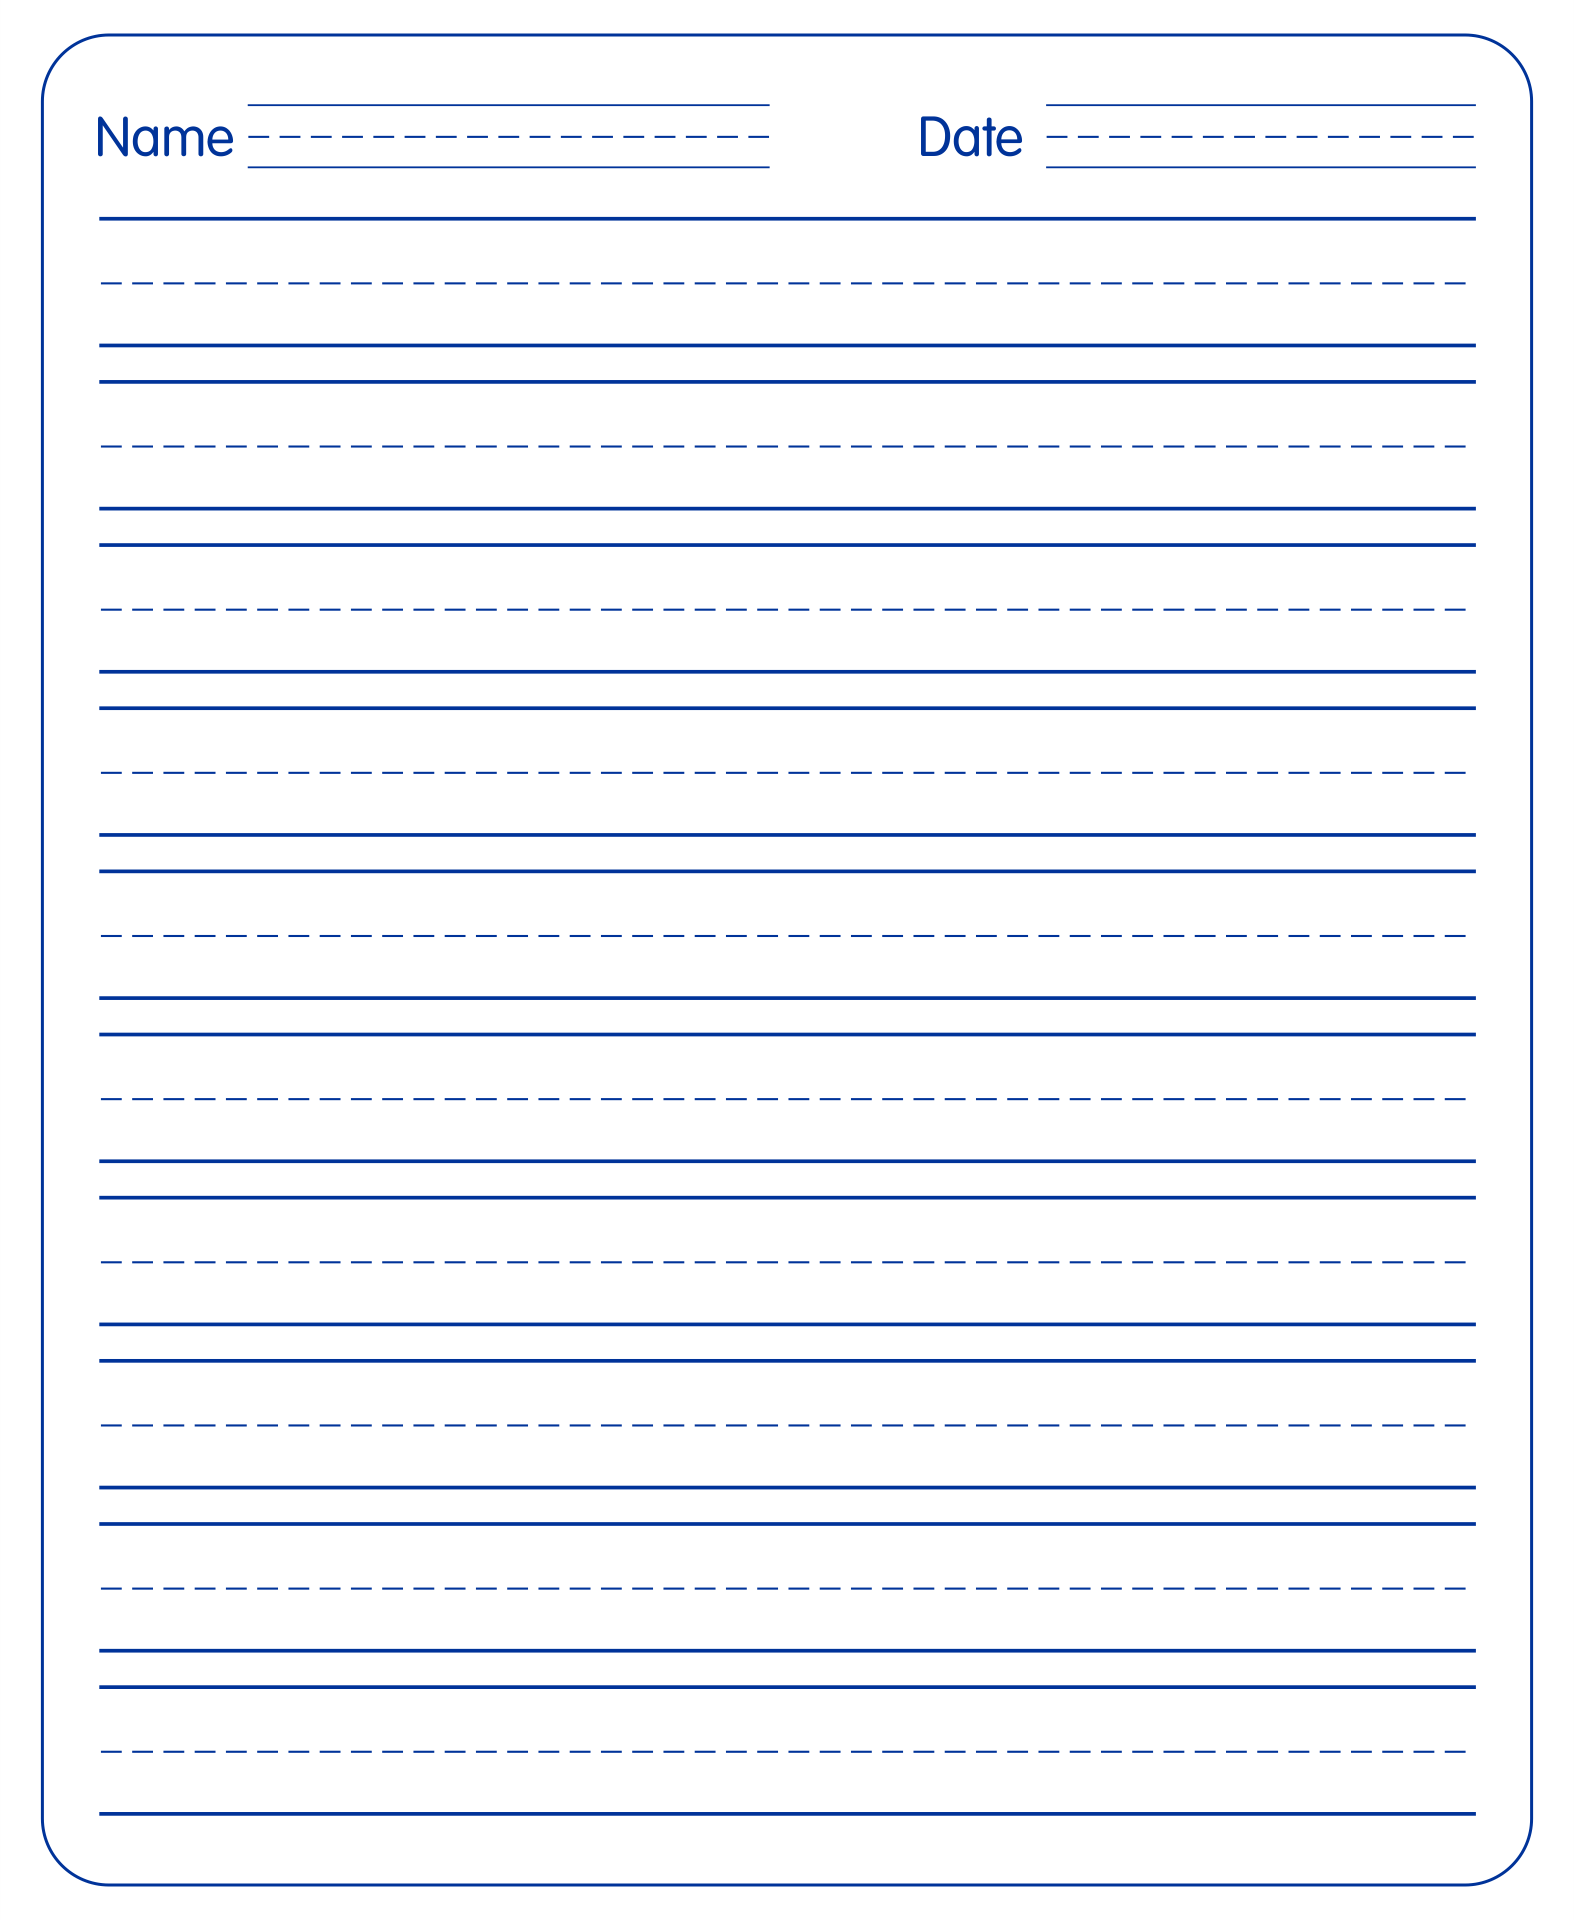 Printable Handwriting Paper